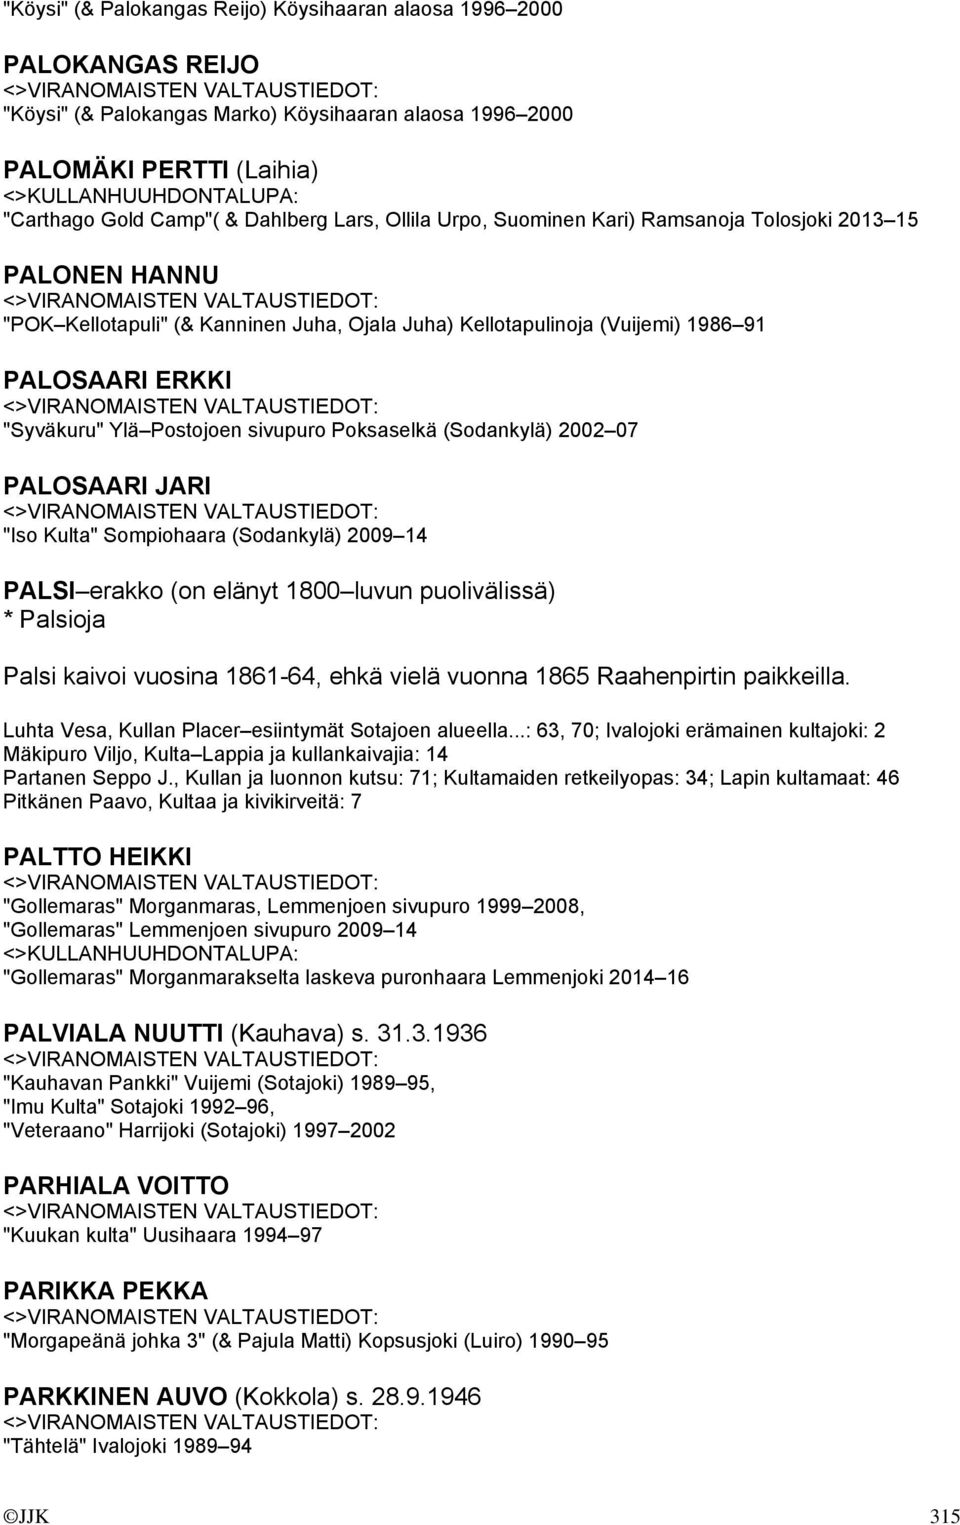 sivupuro Poksaselkä (Sodankylä) 2002 07 PALOSAARI JARI "Iso Kulta" Sompiohaara (Sodankylä) 2009 14 PALSI erakko (on elänyt 1800 luvun puolivälissä) * Palsioja Palsi kaivoi vuosina 1861-64, ehkä vielä